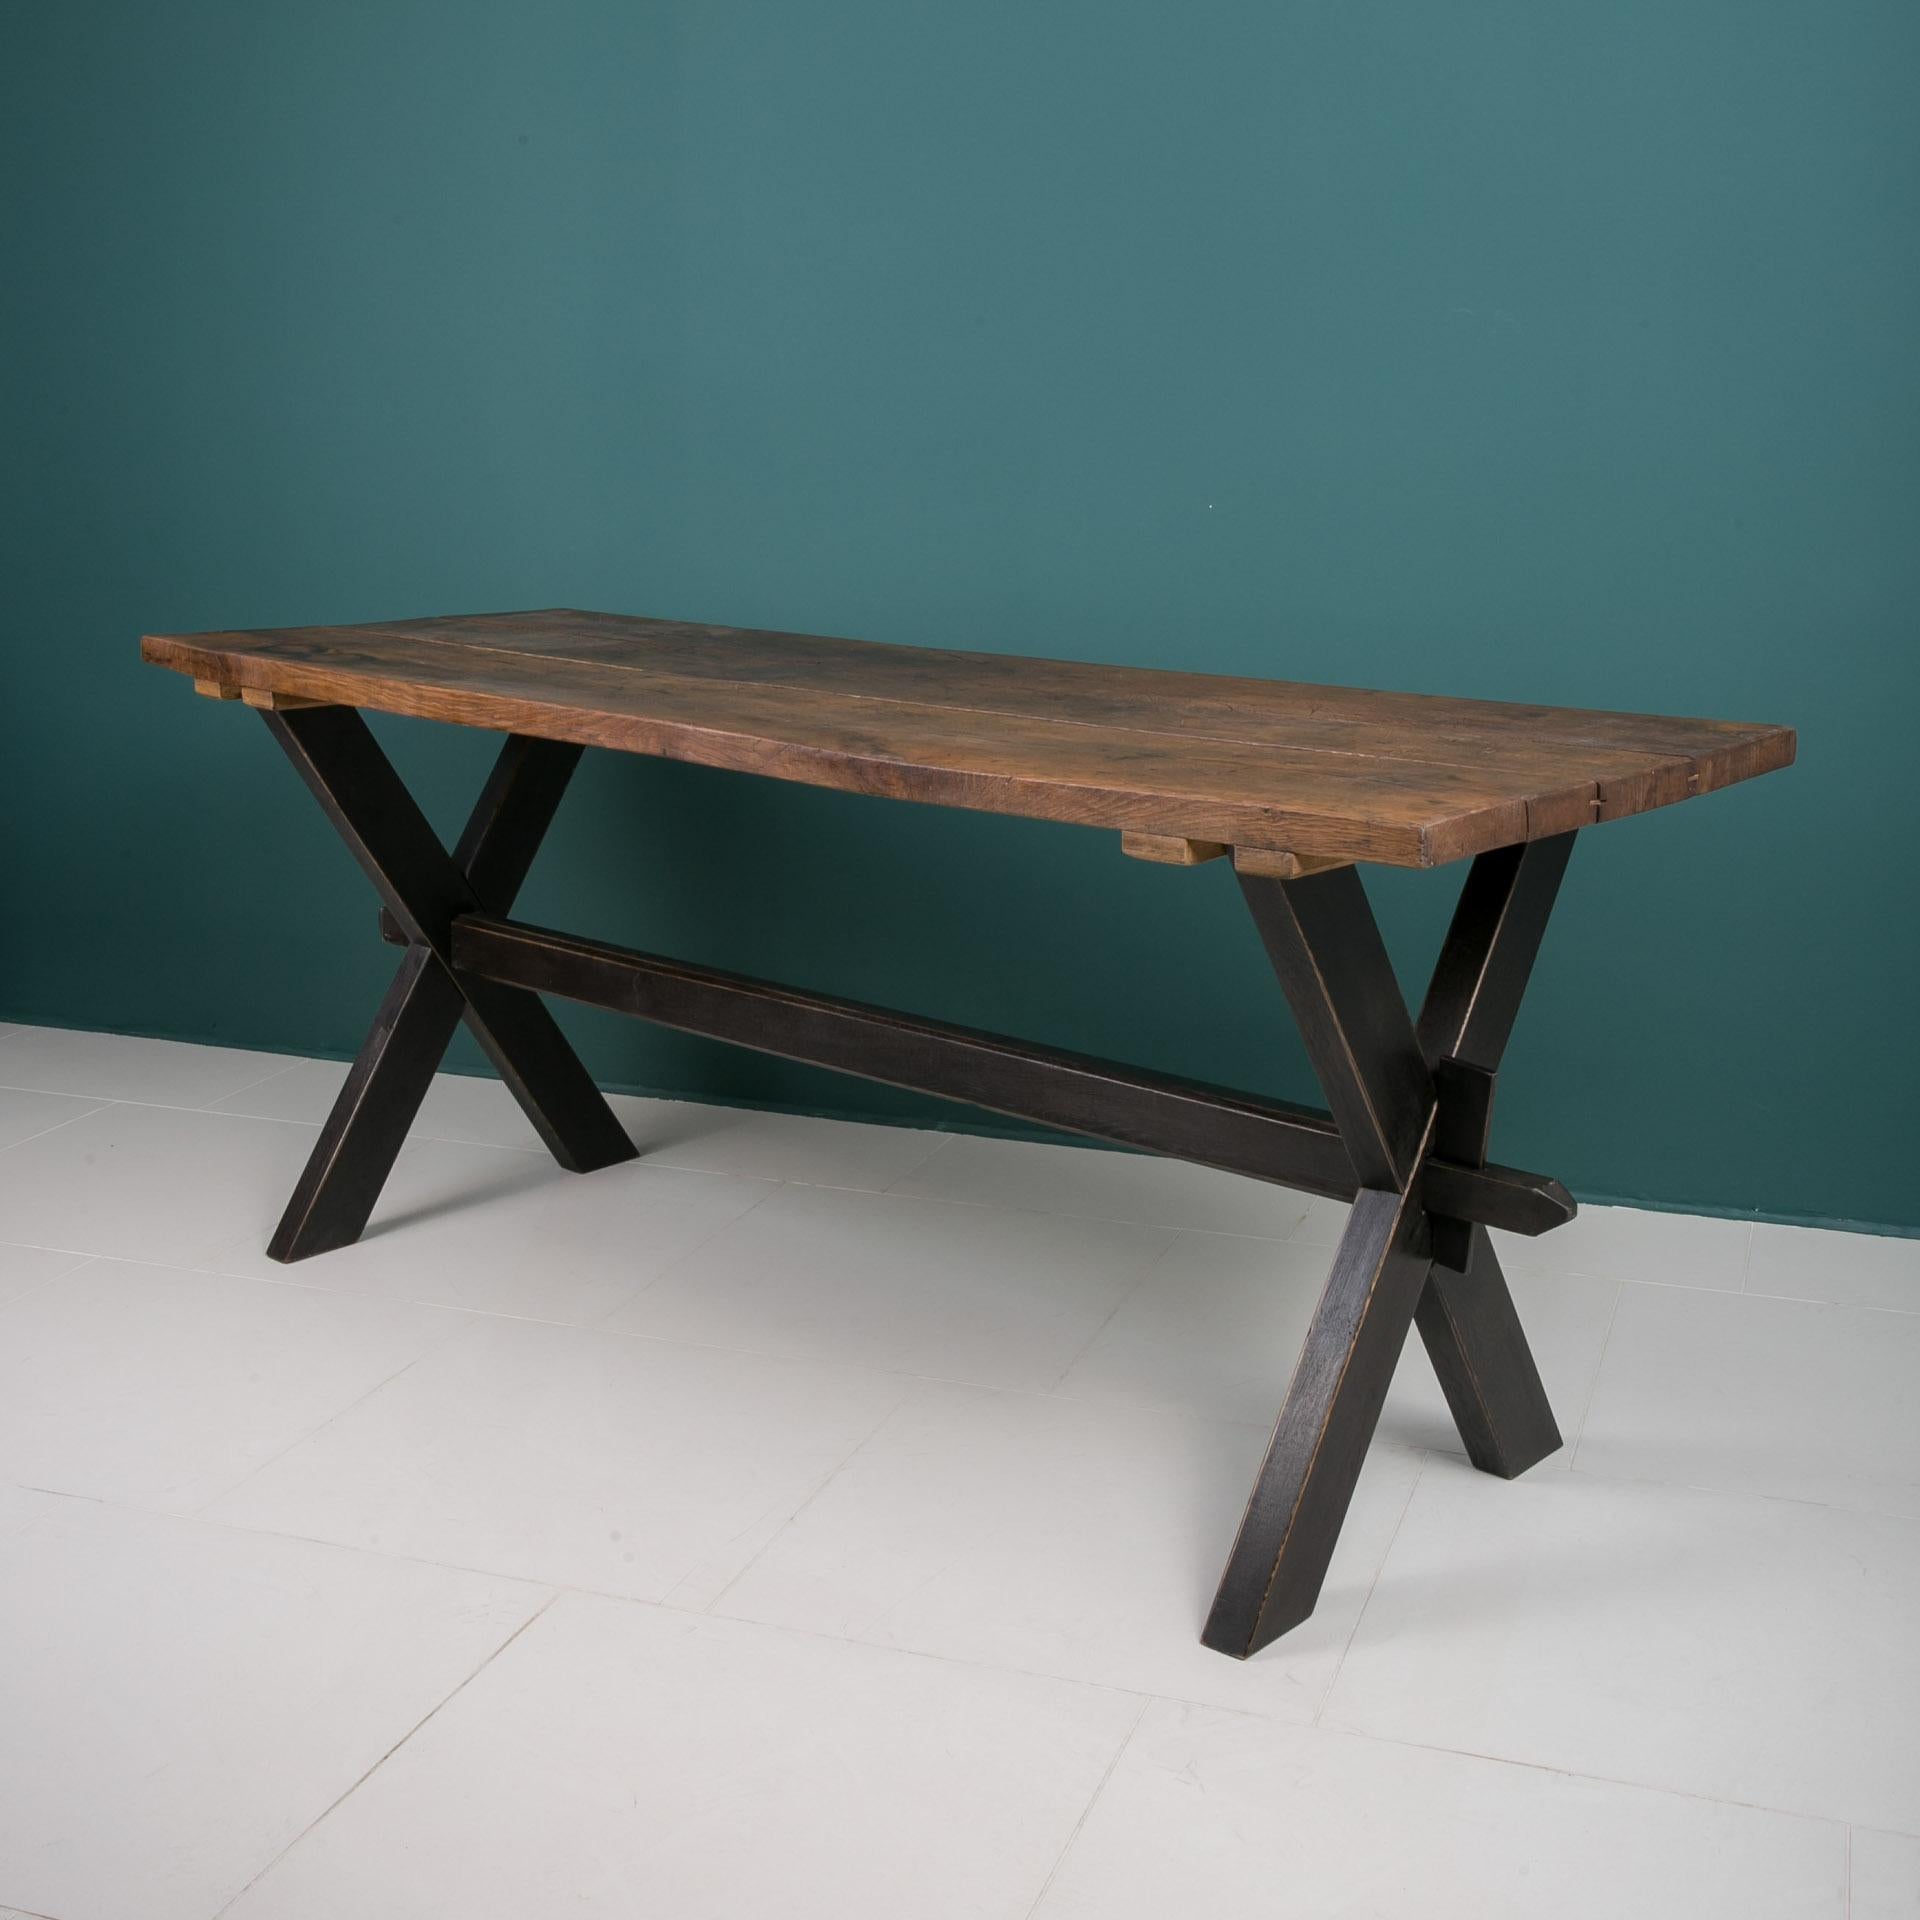 Cette table provient d'Allemagne et a été fabriquée au début du 20e siècle. Il est fabriqué en bois de chêne massif. Il a acquis une patine unique au fil des années d'utilisation. Le plateau de la table est constitué de trois larges planches de